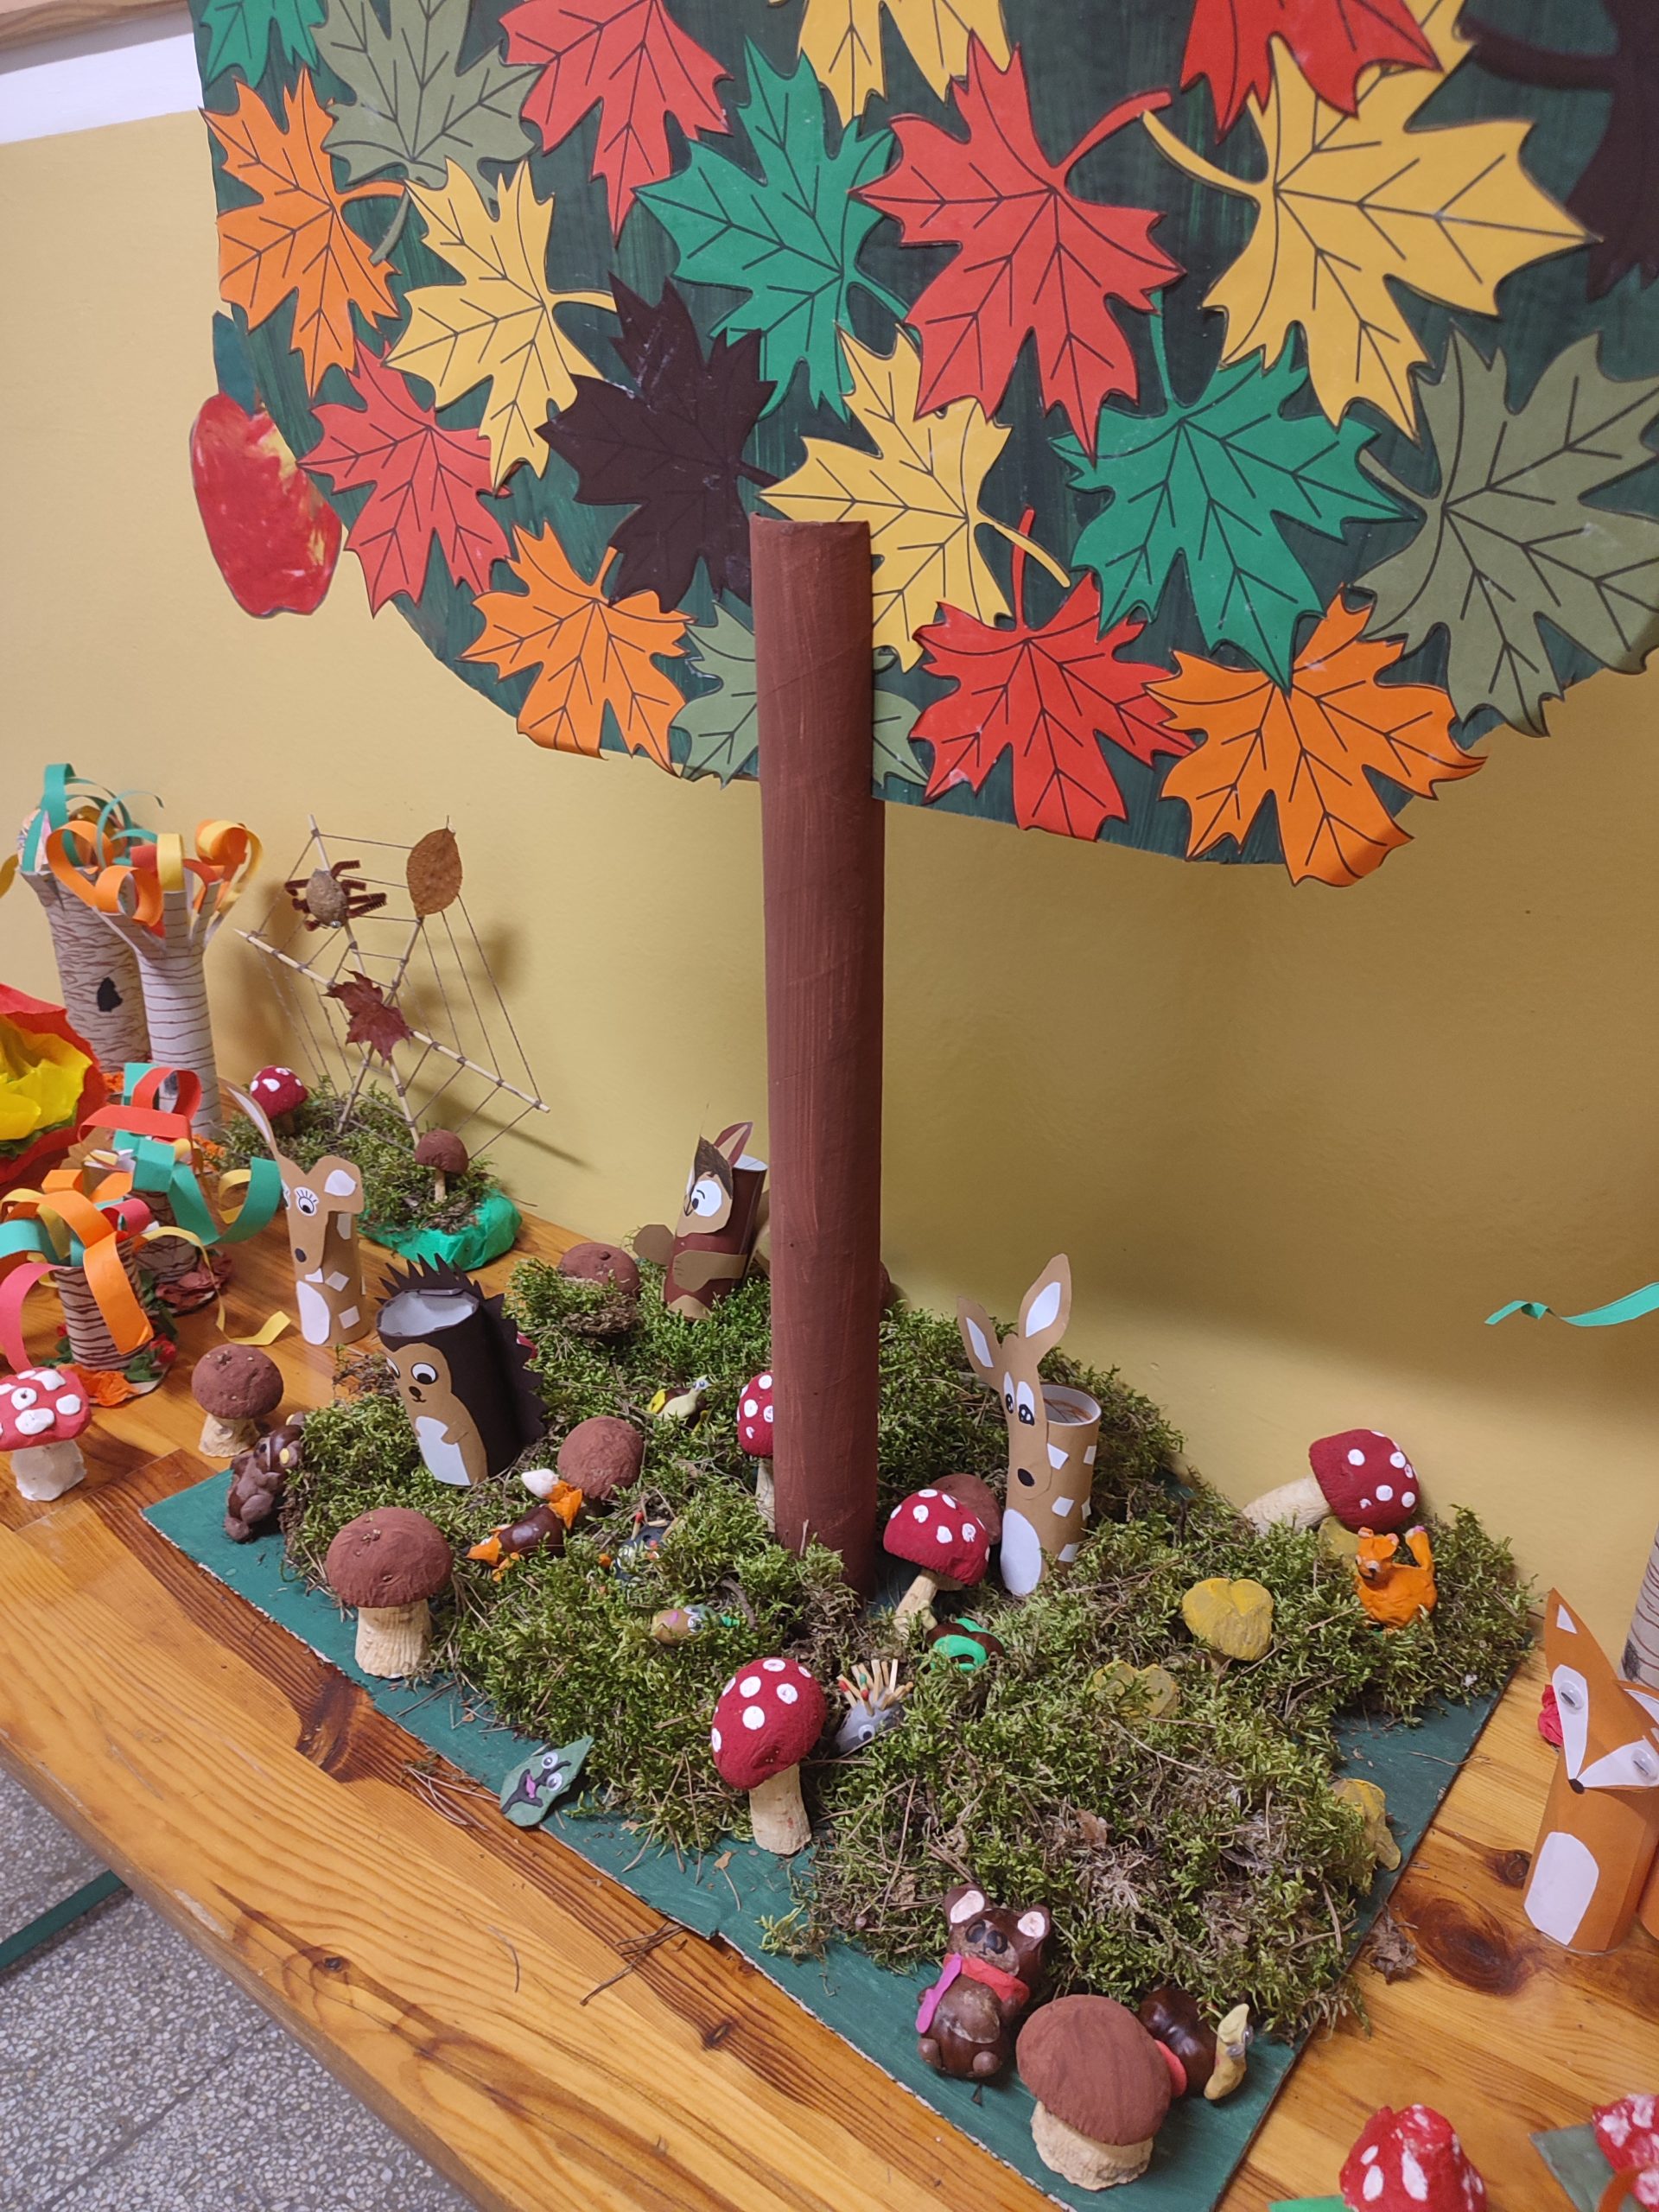 Jesienna wystawa prac plastycznych i technicznych. Na stole stoi wysokie drzewo z tektury a w koło niego pośród mchu rozstawione zwierzątka, grzyby i drzewa z papierowych rolek, plasteliny i warzyw.